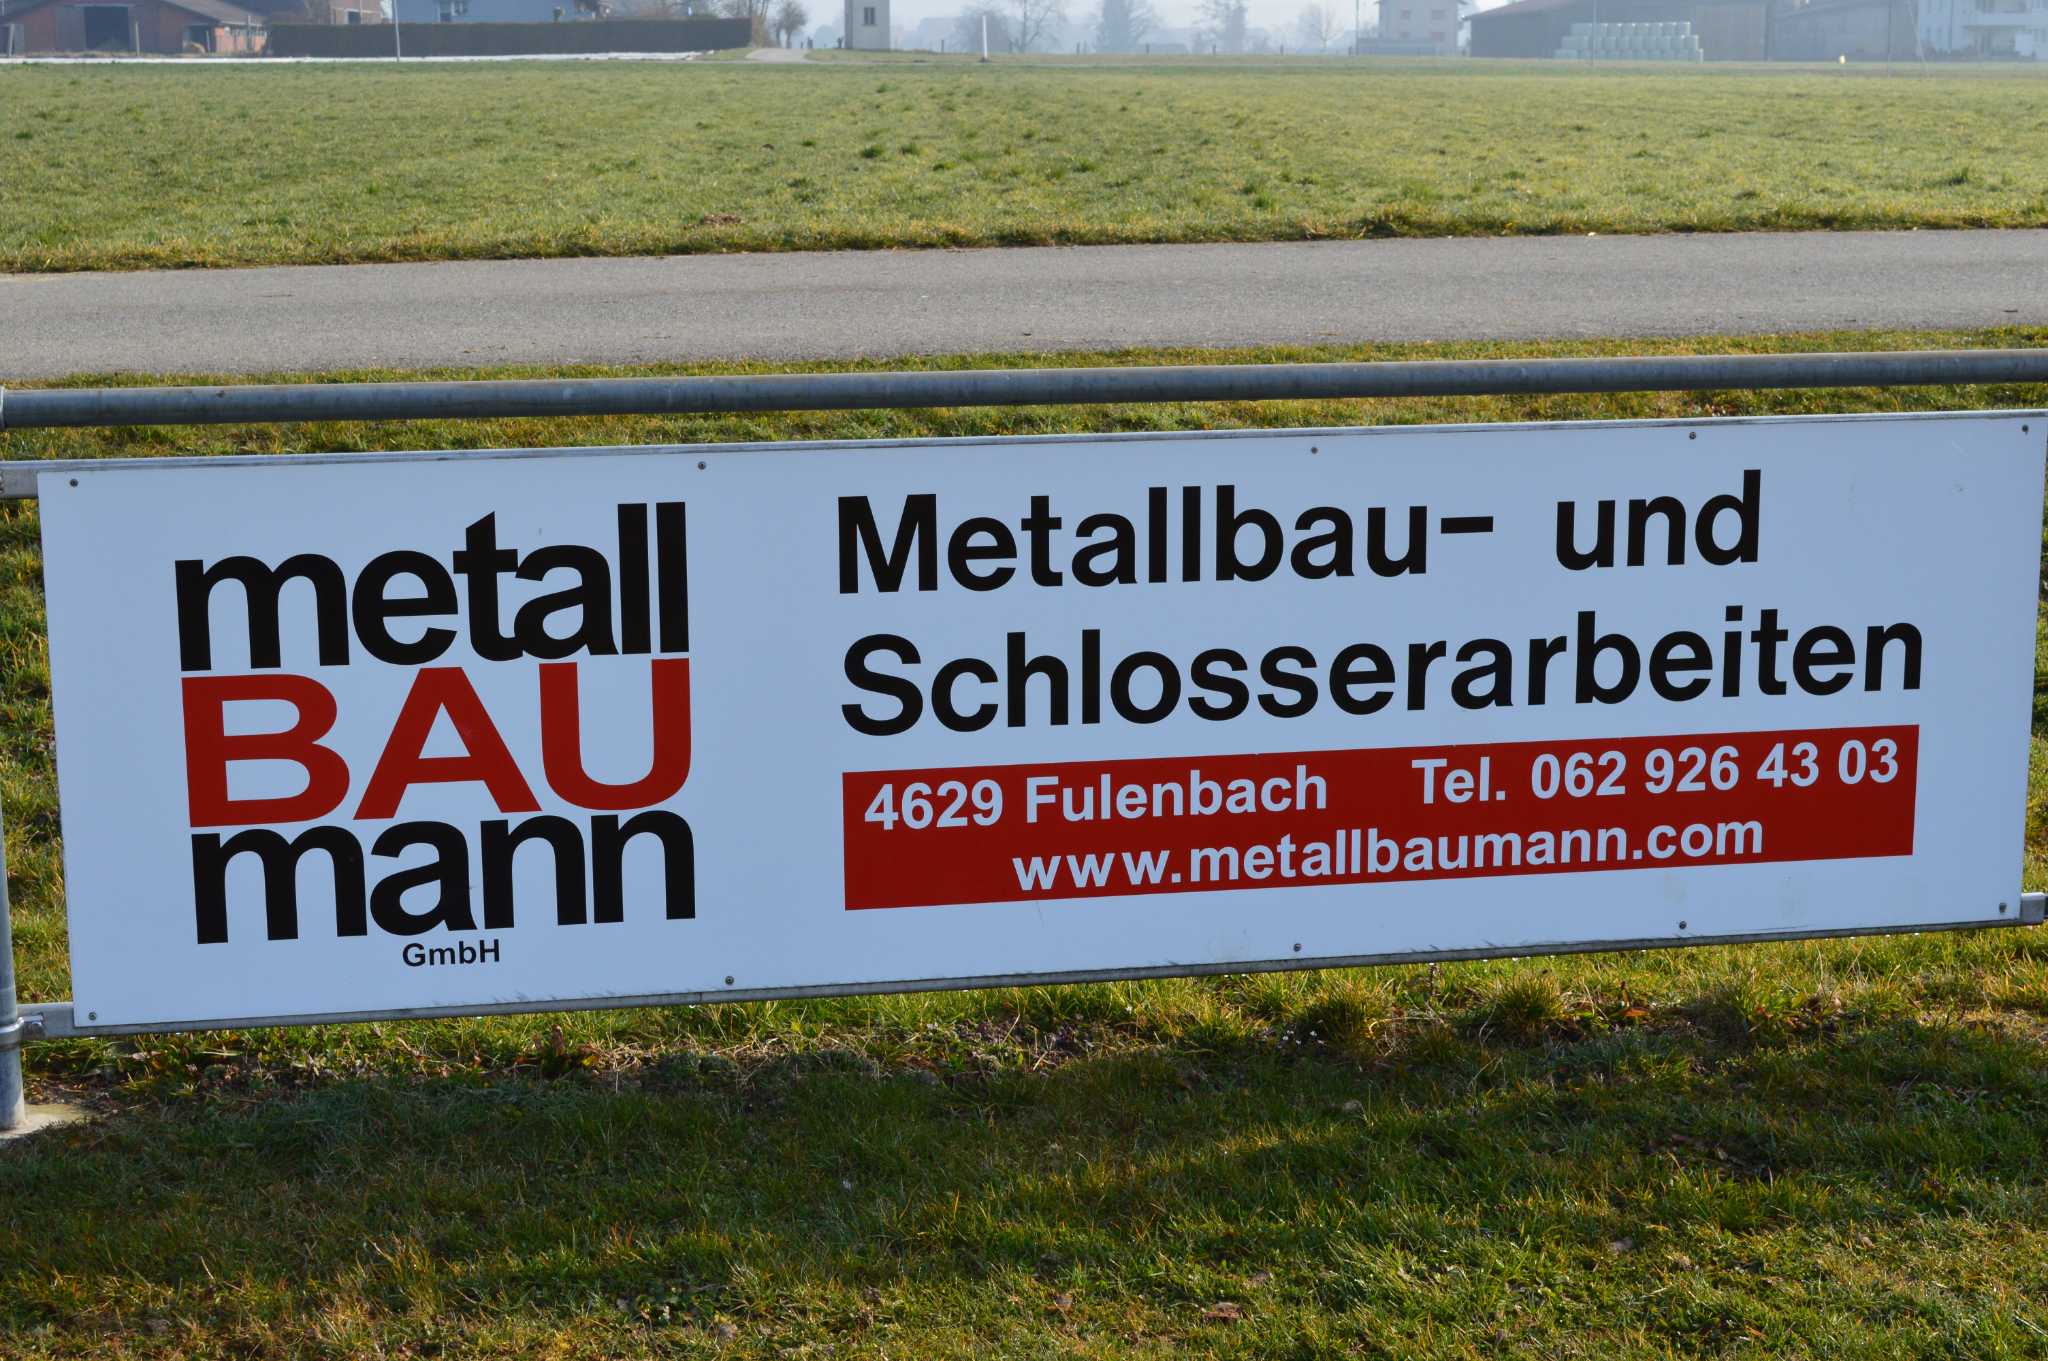 metallBAUmann GmbH